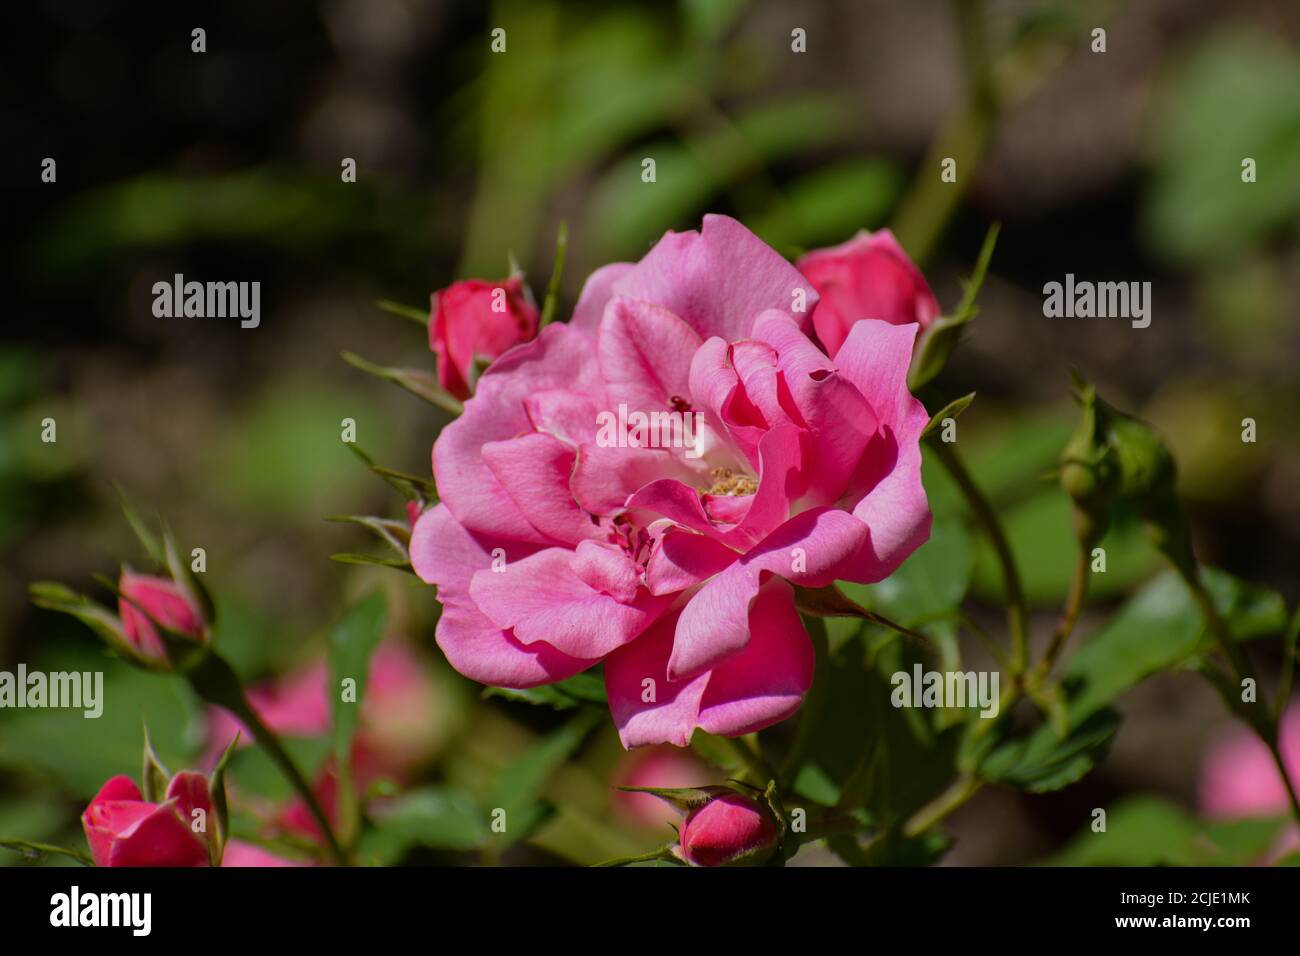 La rose avec le nom Bad Wörishofen a une fleur rose ouverte. En arrière-plan, vous pouvez voir des fleurs fermées. Banque D'Images